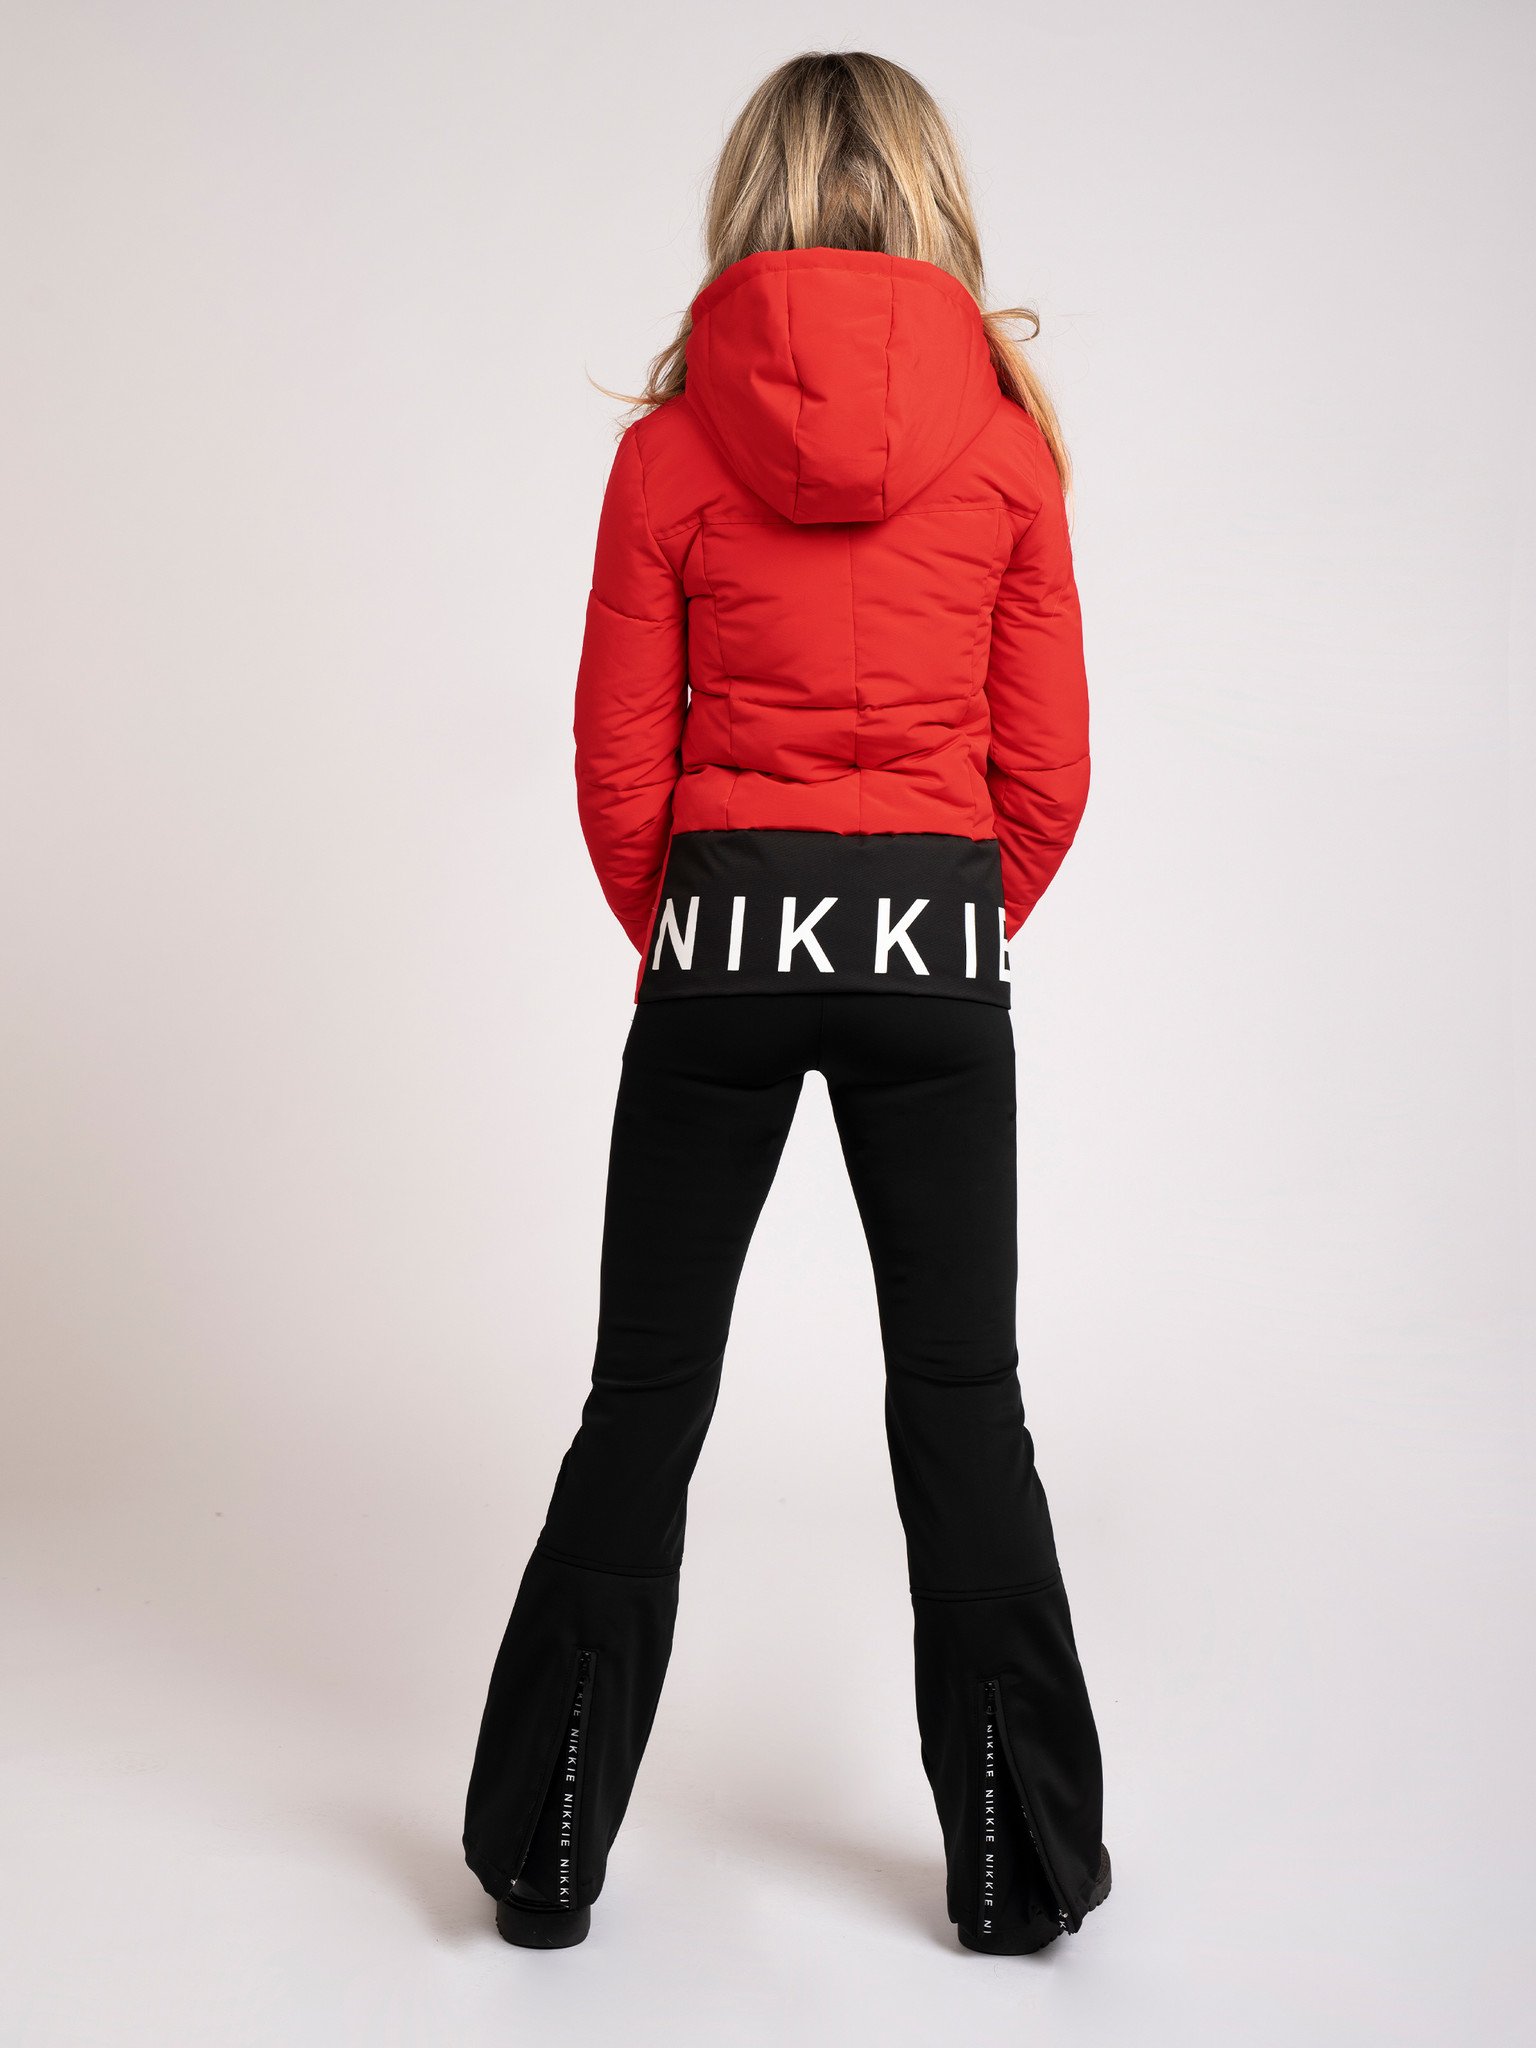 Nikkie Ski Kleding, Buy Now, Flash Sales, 60% OFF, www.demeselmetalicas.com